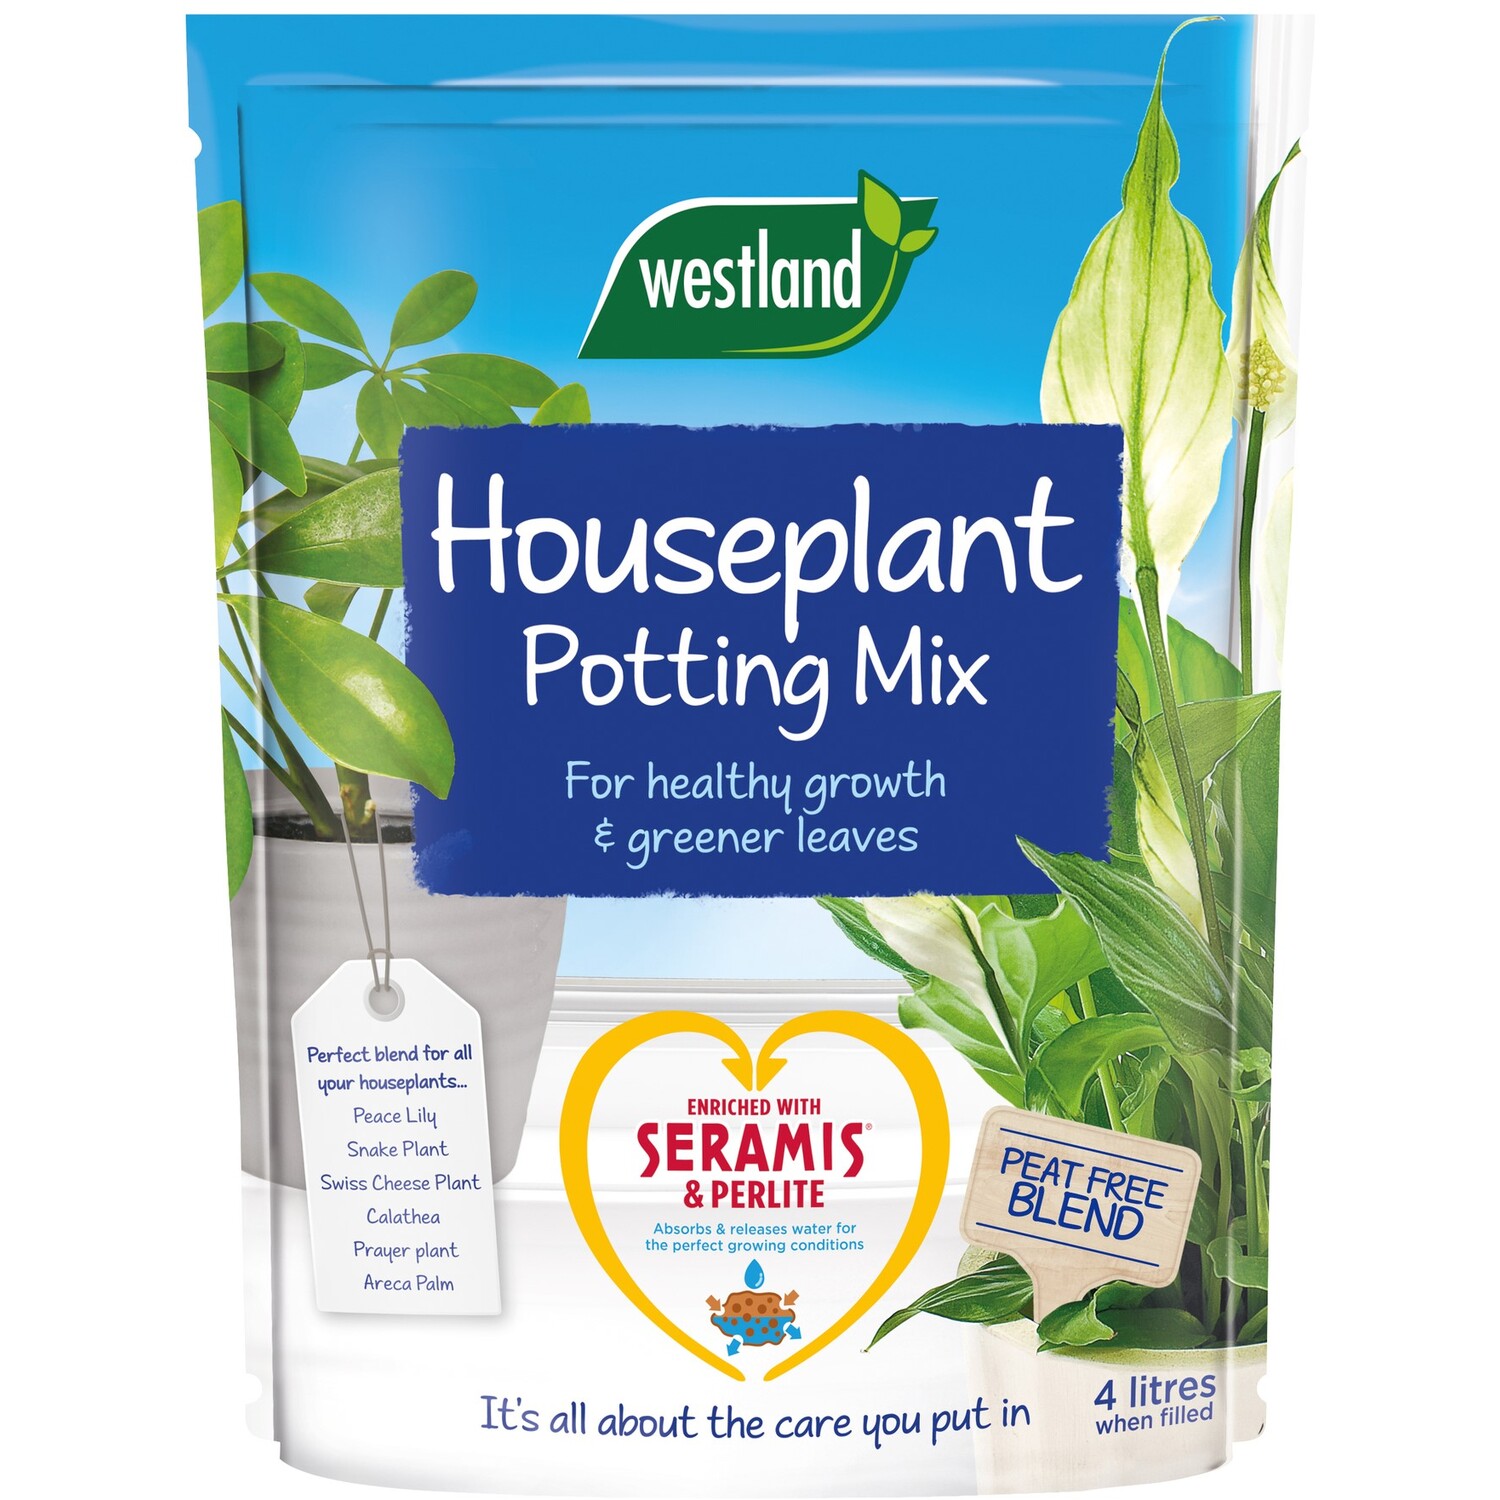 Westland Houseplant Potting Mix Image